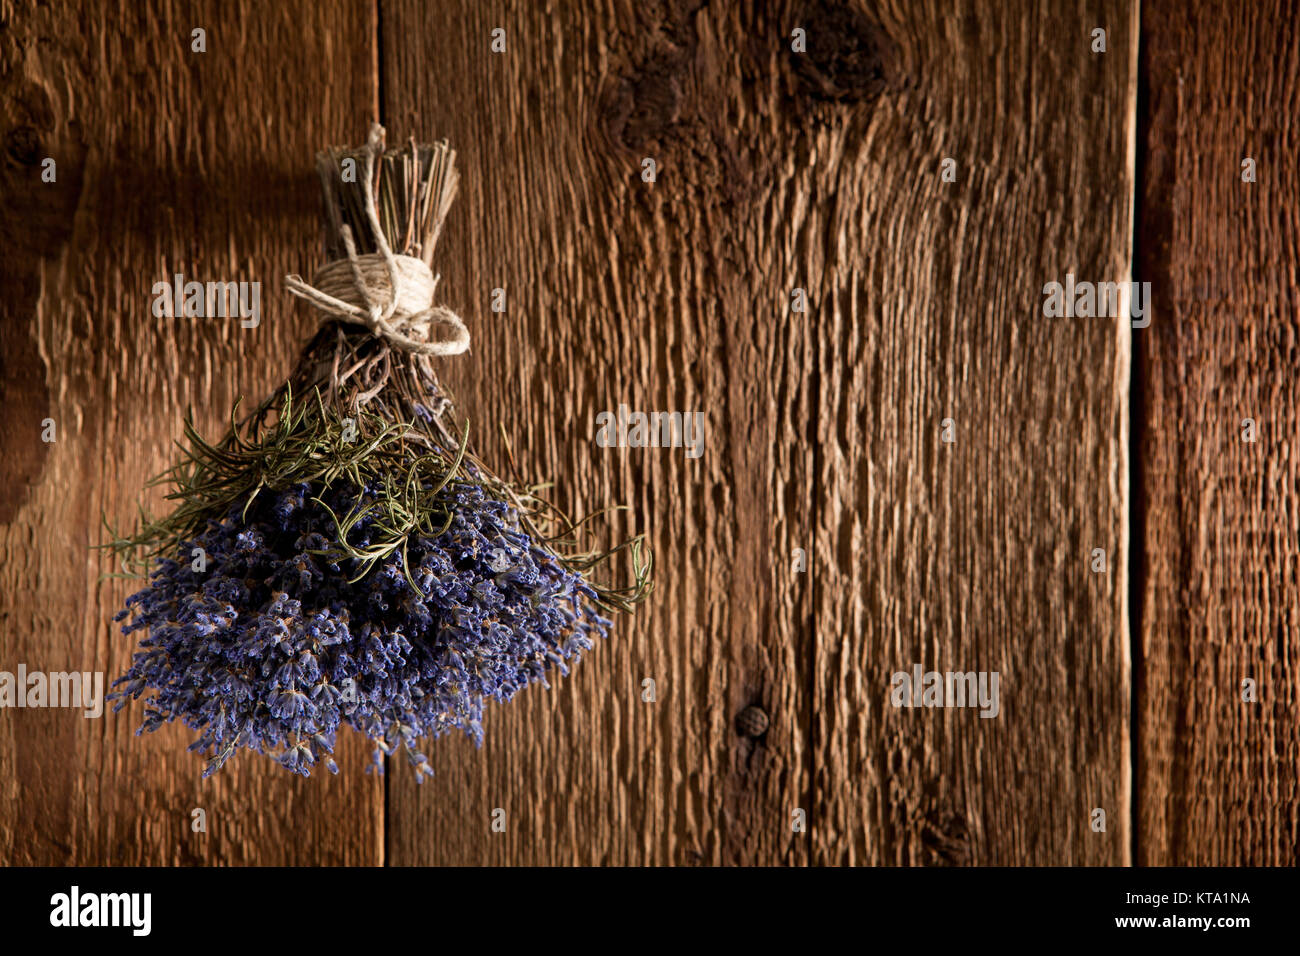 Ein Strauß Lavendel hängt zum Trocknen auf einer rustikalen Holzwand Foto Stock